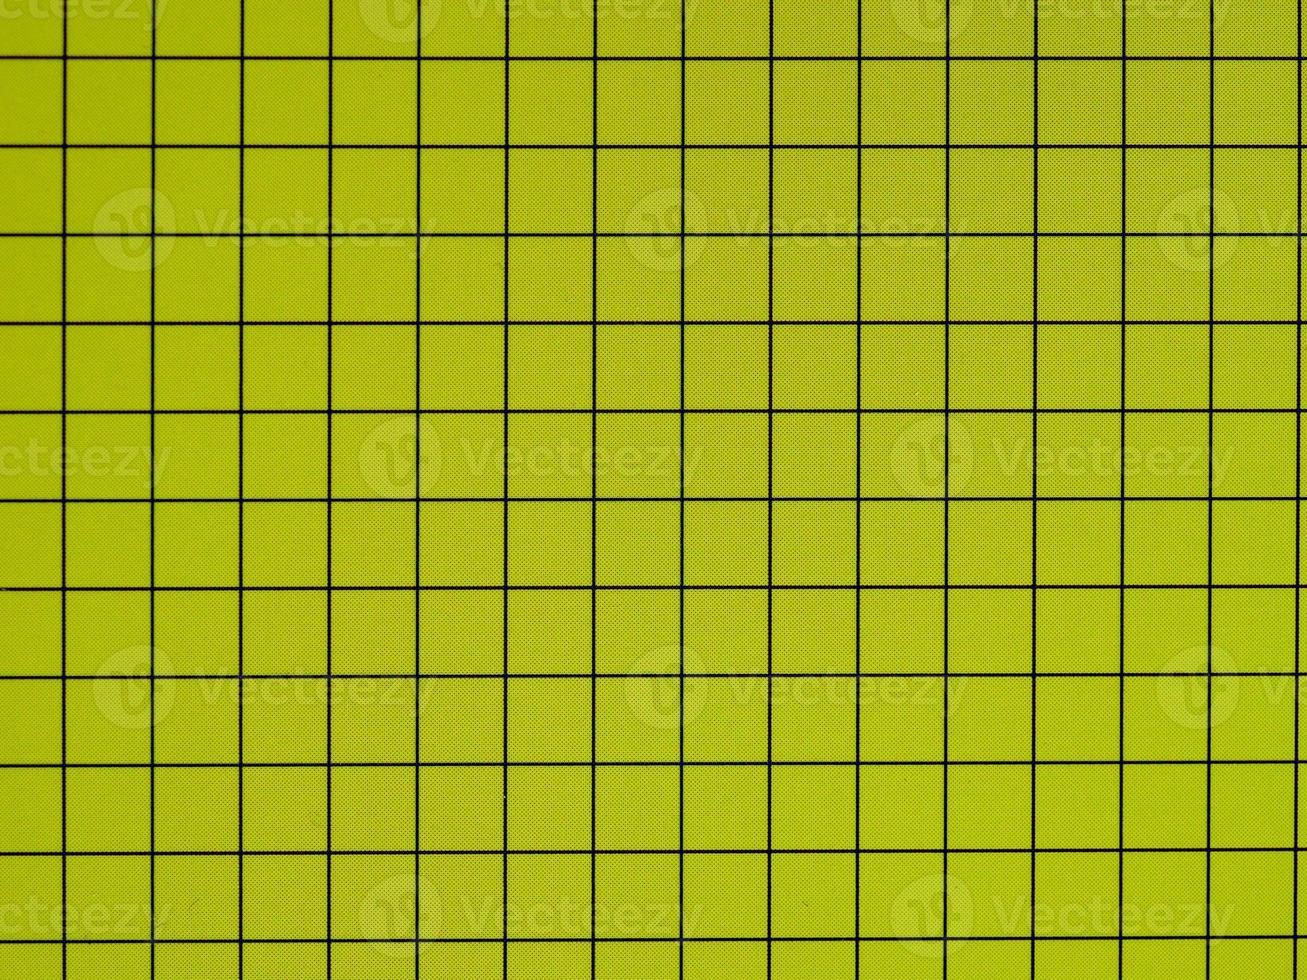 sfondo texture di carta verde foto